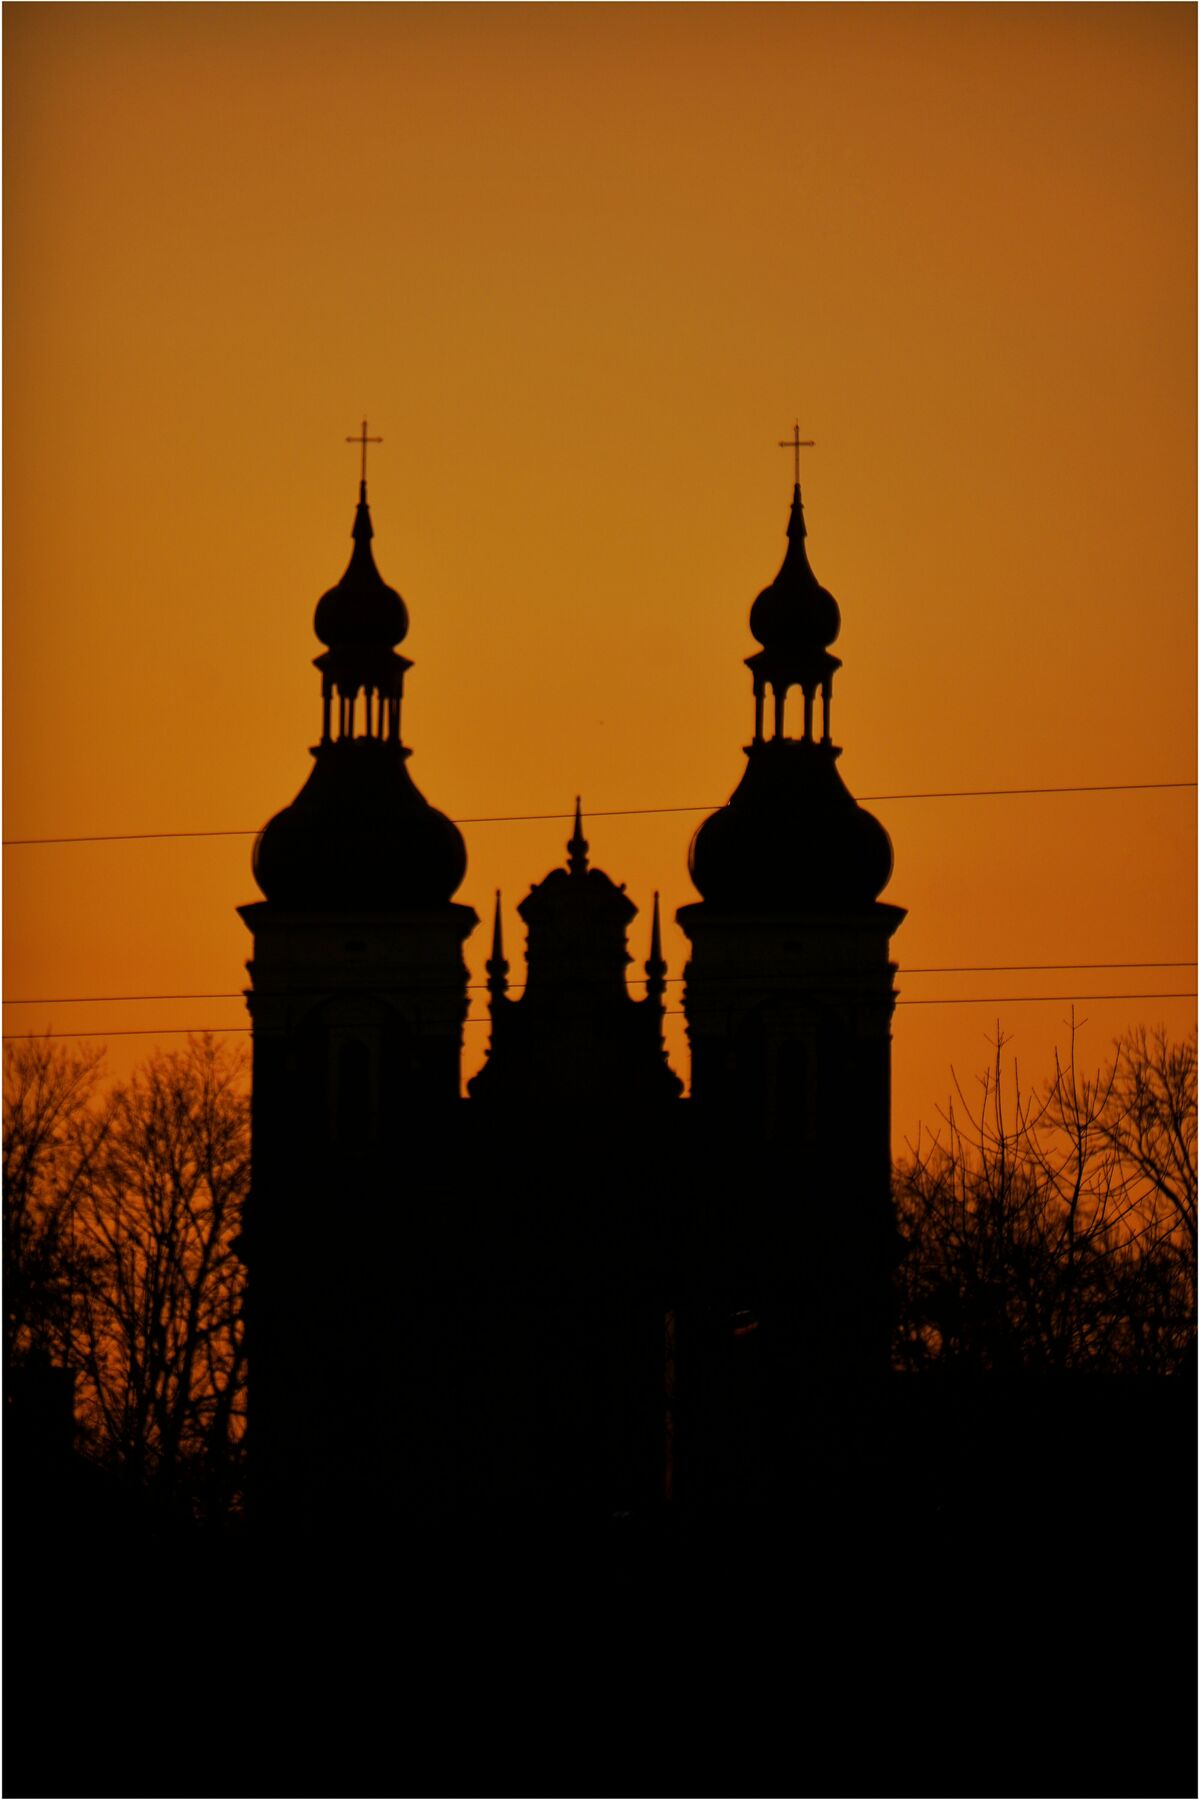 Zarys wież kościoła na tle pomarańczowego nieba o zachodzie słońca.